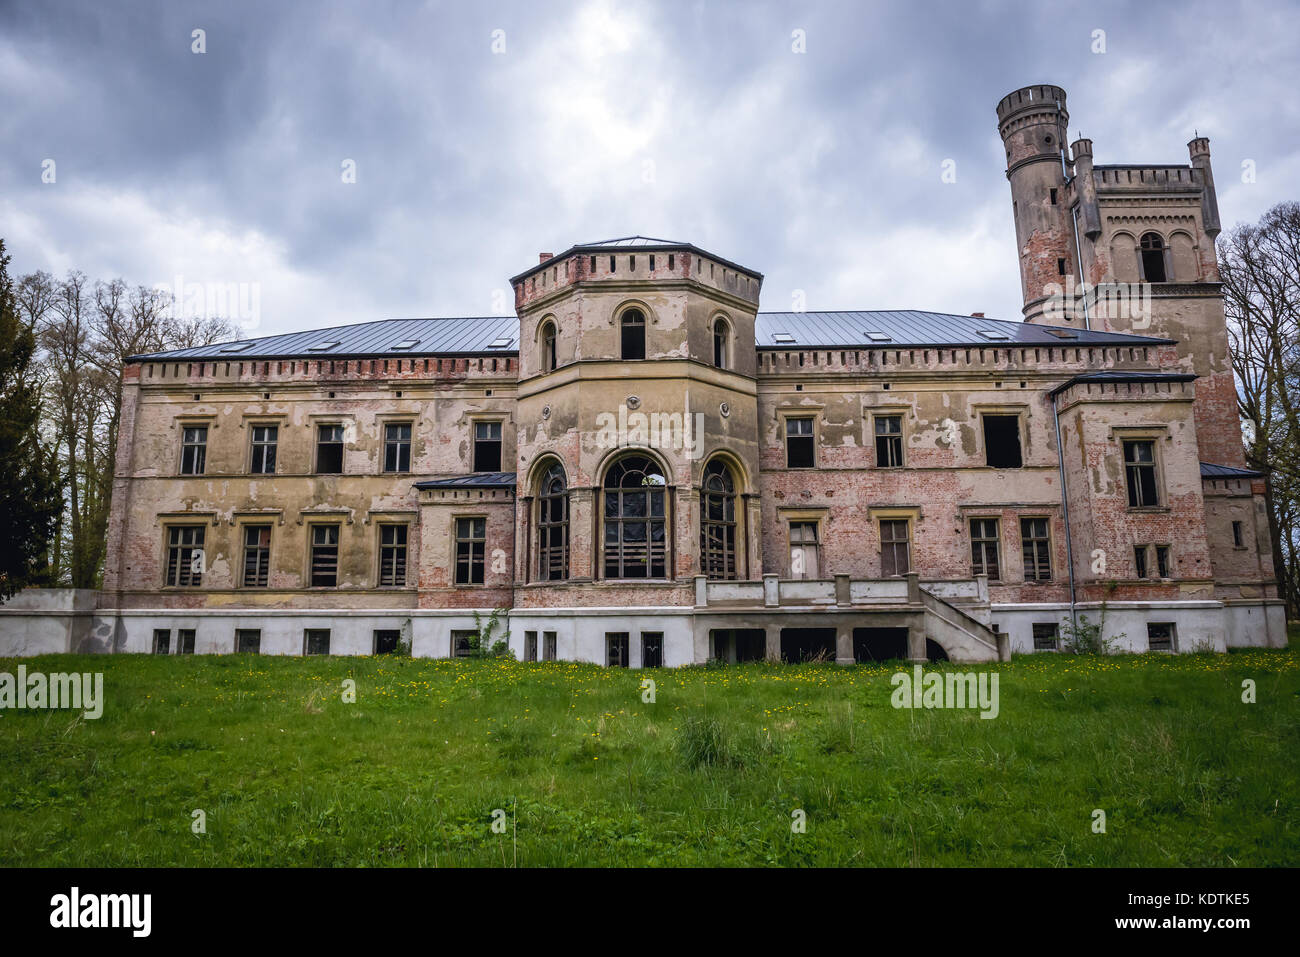 Fassade des verlassenen gotischen Revival-Palast in Drezewo Dorf in der Woiwodschaft Westpommern von Polen Stockfoto